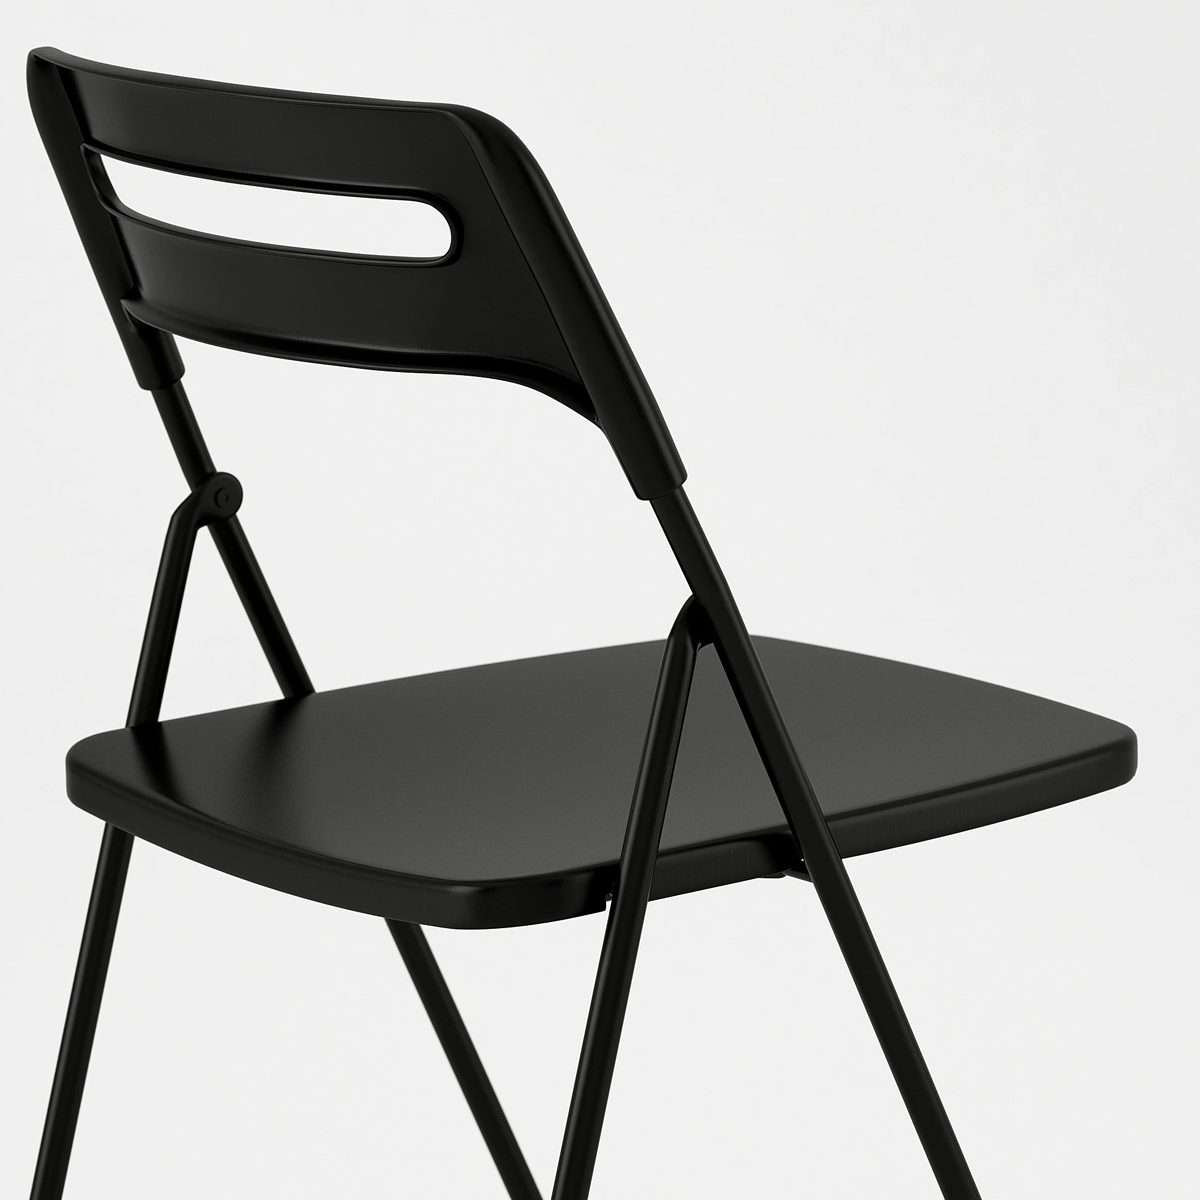 NISSE stolica na rasklapanje, crna